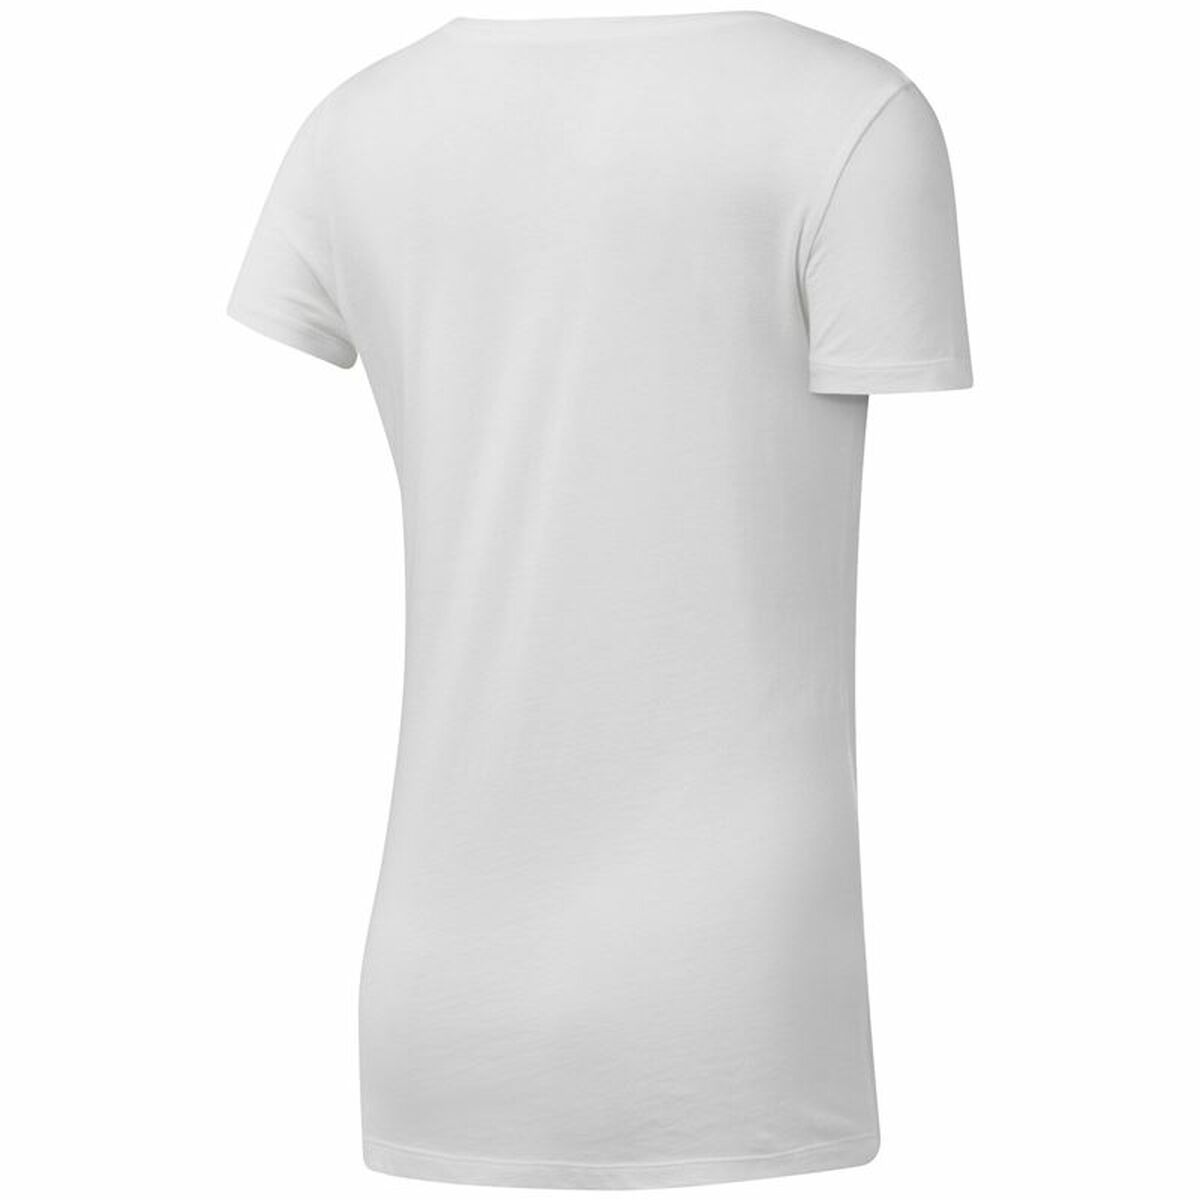 Damen Kurzarm-T-Shirt Reebok Scoop Neck Weiß